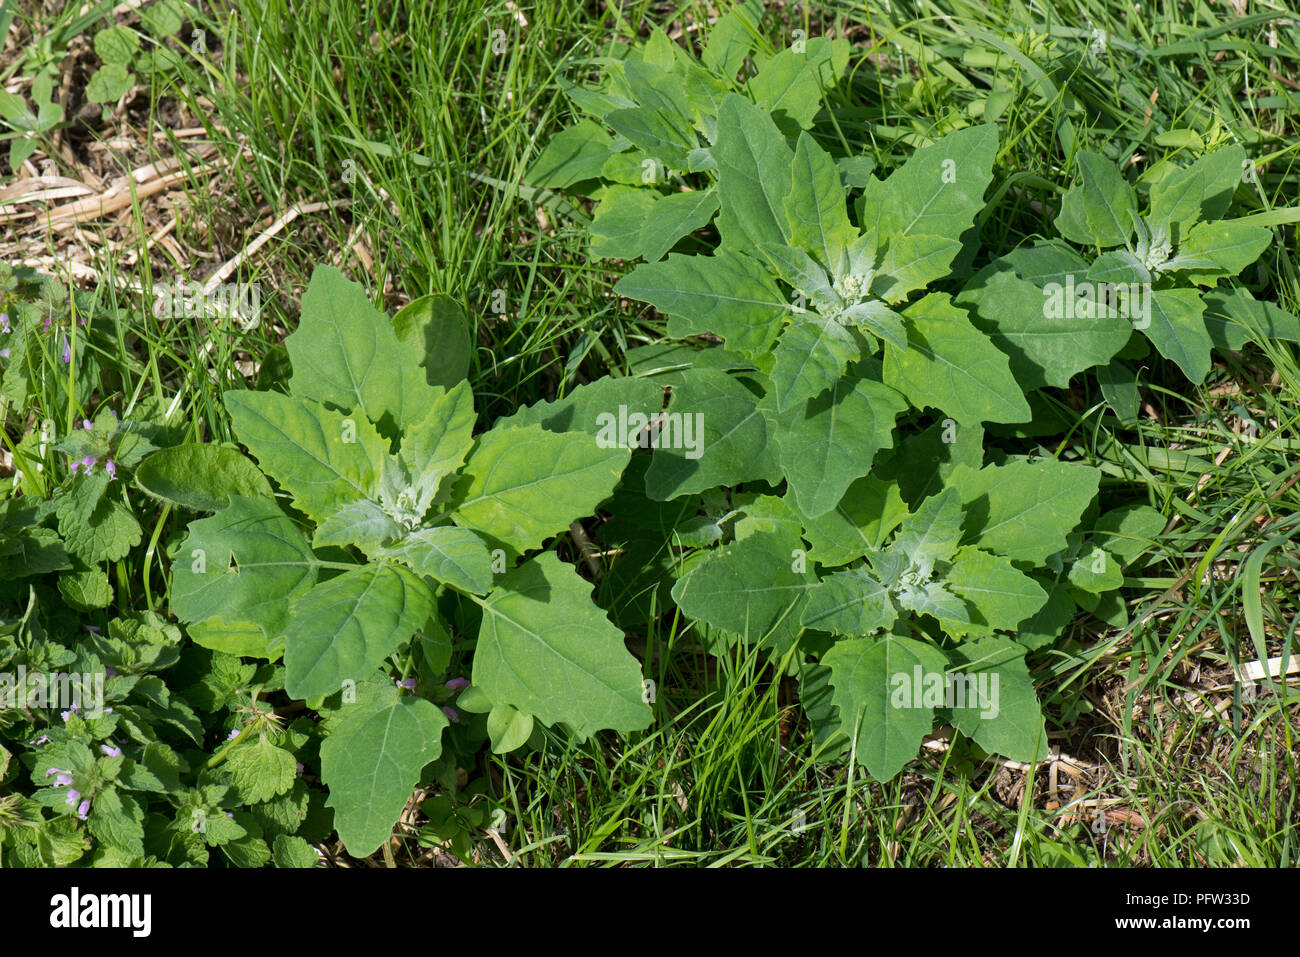 Fette Henne oder Pigweed, Schisandra album, junge Pflanzen mit Jungen glaucous Blätter, Berkshire, Juni Stockfoto